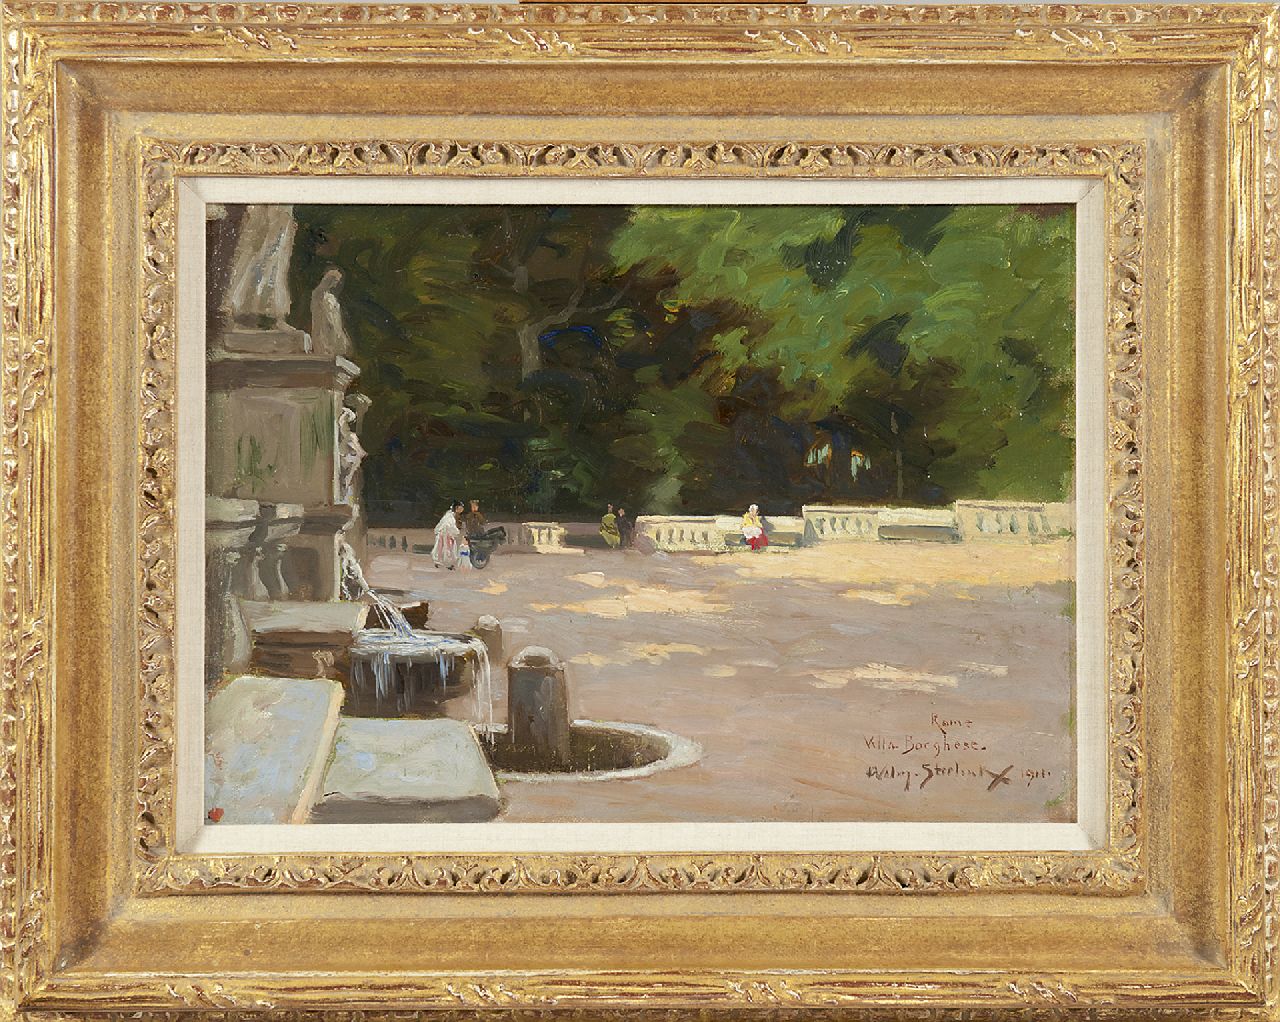 Steelink jr. W.  | Willem Steelink jr. | Schilderijen te koop aangeboden | Villa Borghese, Rome, olieverf op doek op paneel 28,2 x 37,2 cm, gesigneerd rechtsonder en gedateerd 1911